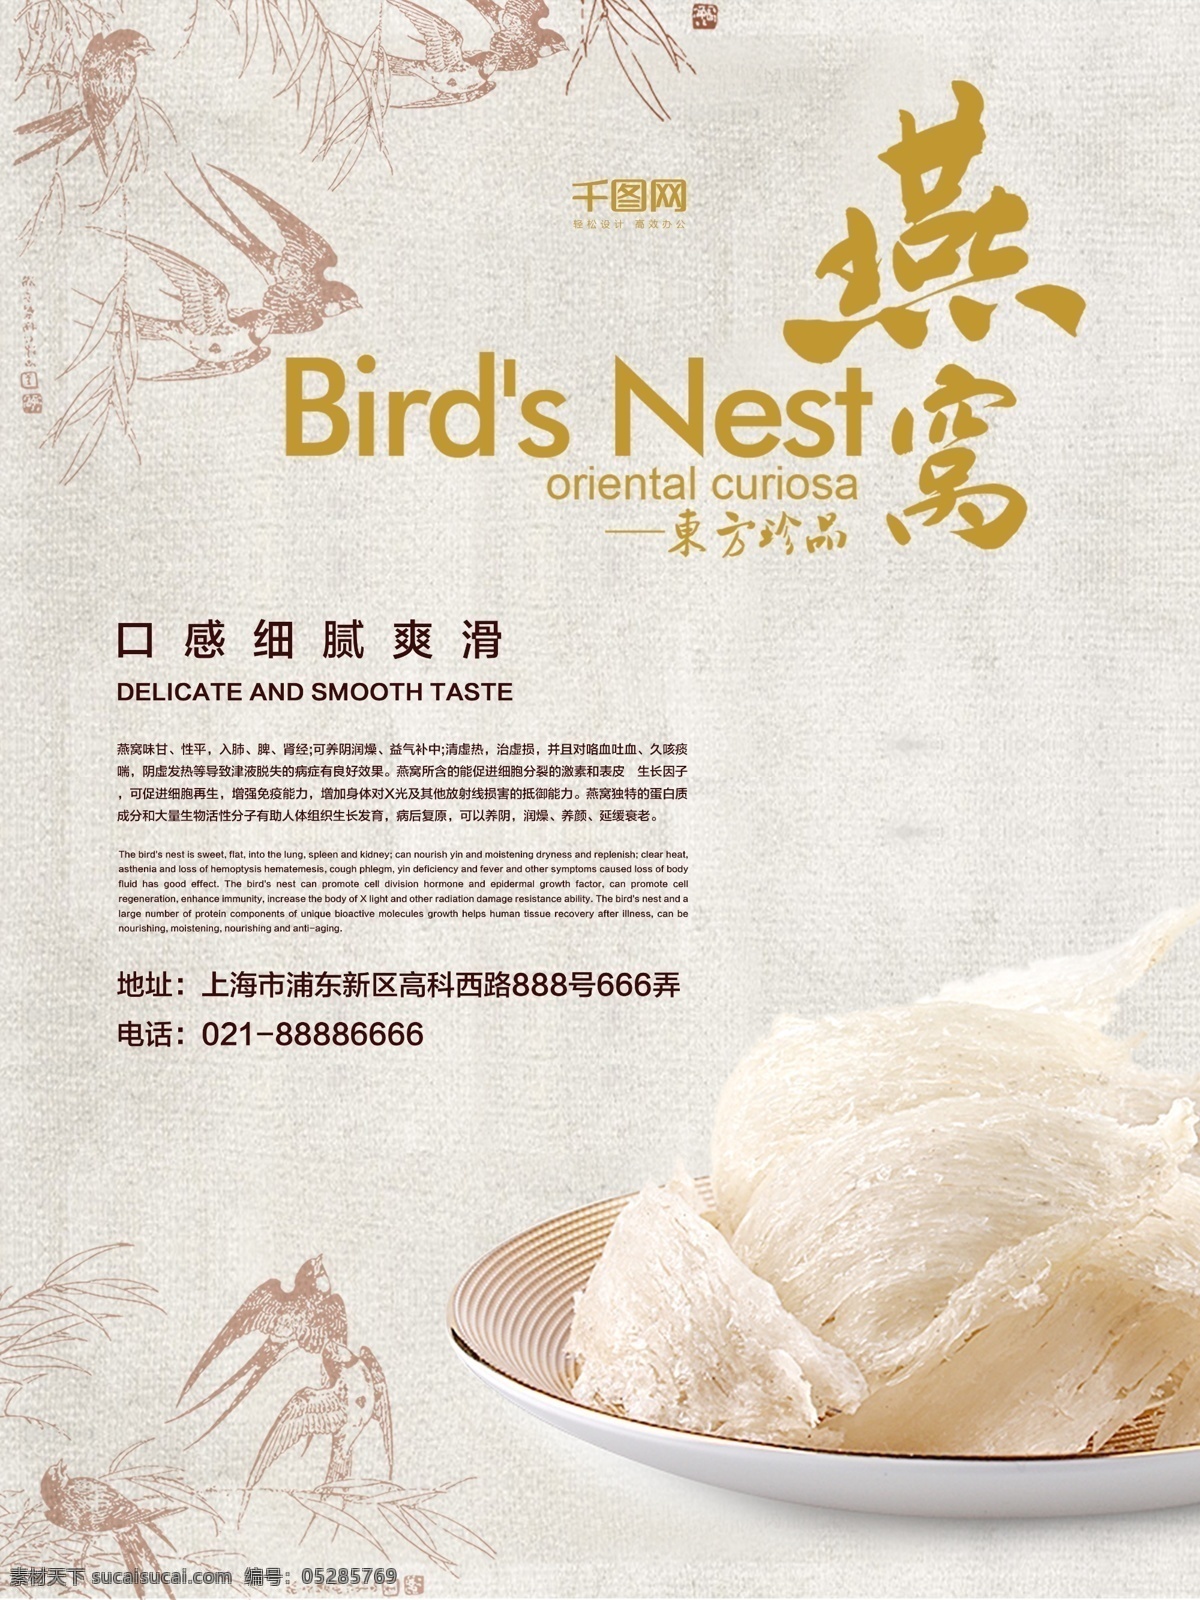 清新 简约 燕窝 美食 补品 宣传 促销 海报 展板 中国风 美味 传统食品 中华传统